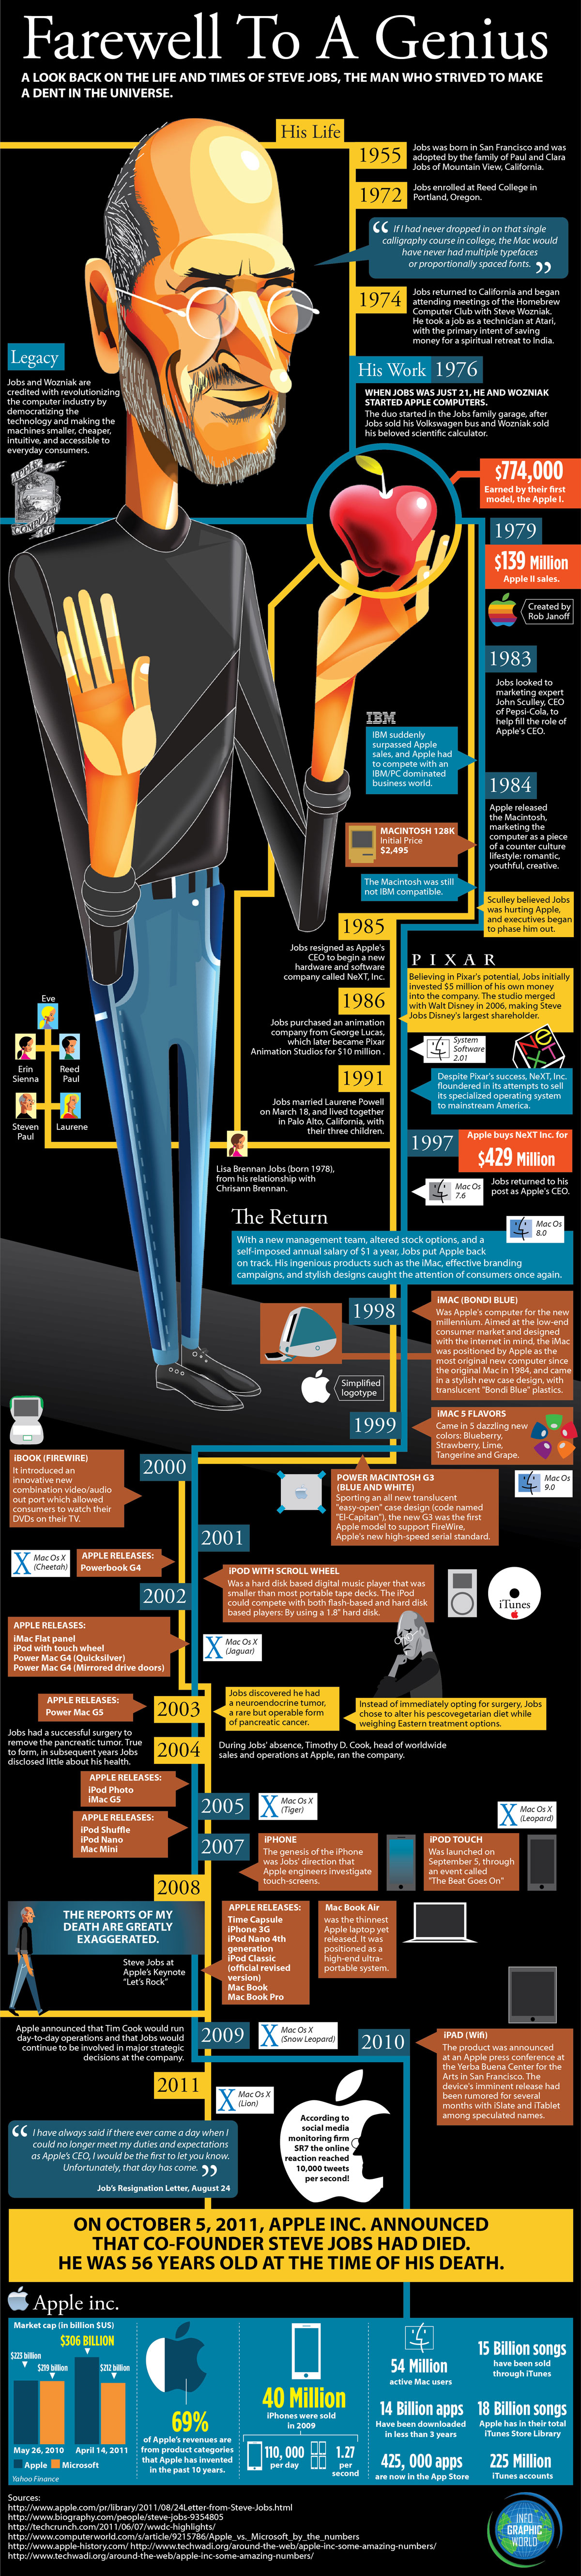 Infográfico sobre Steve Jobs